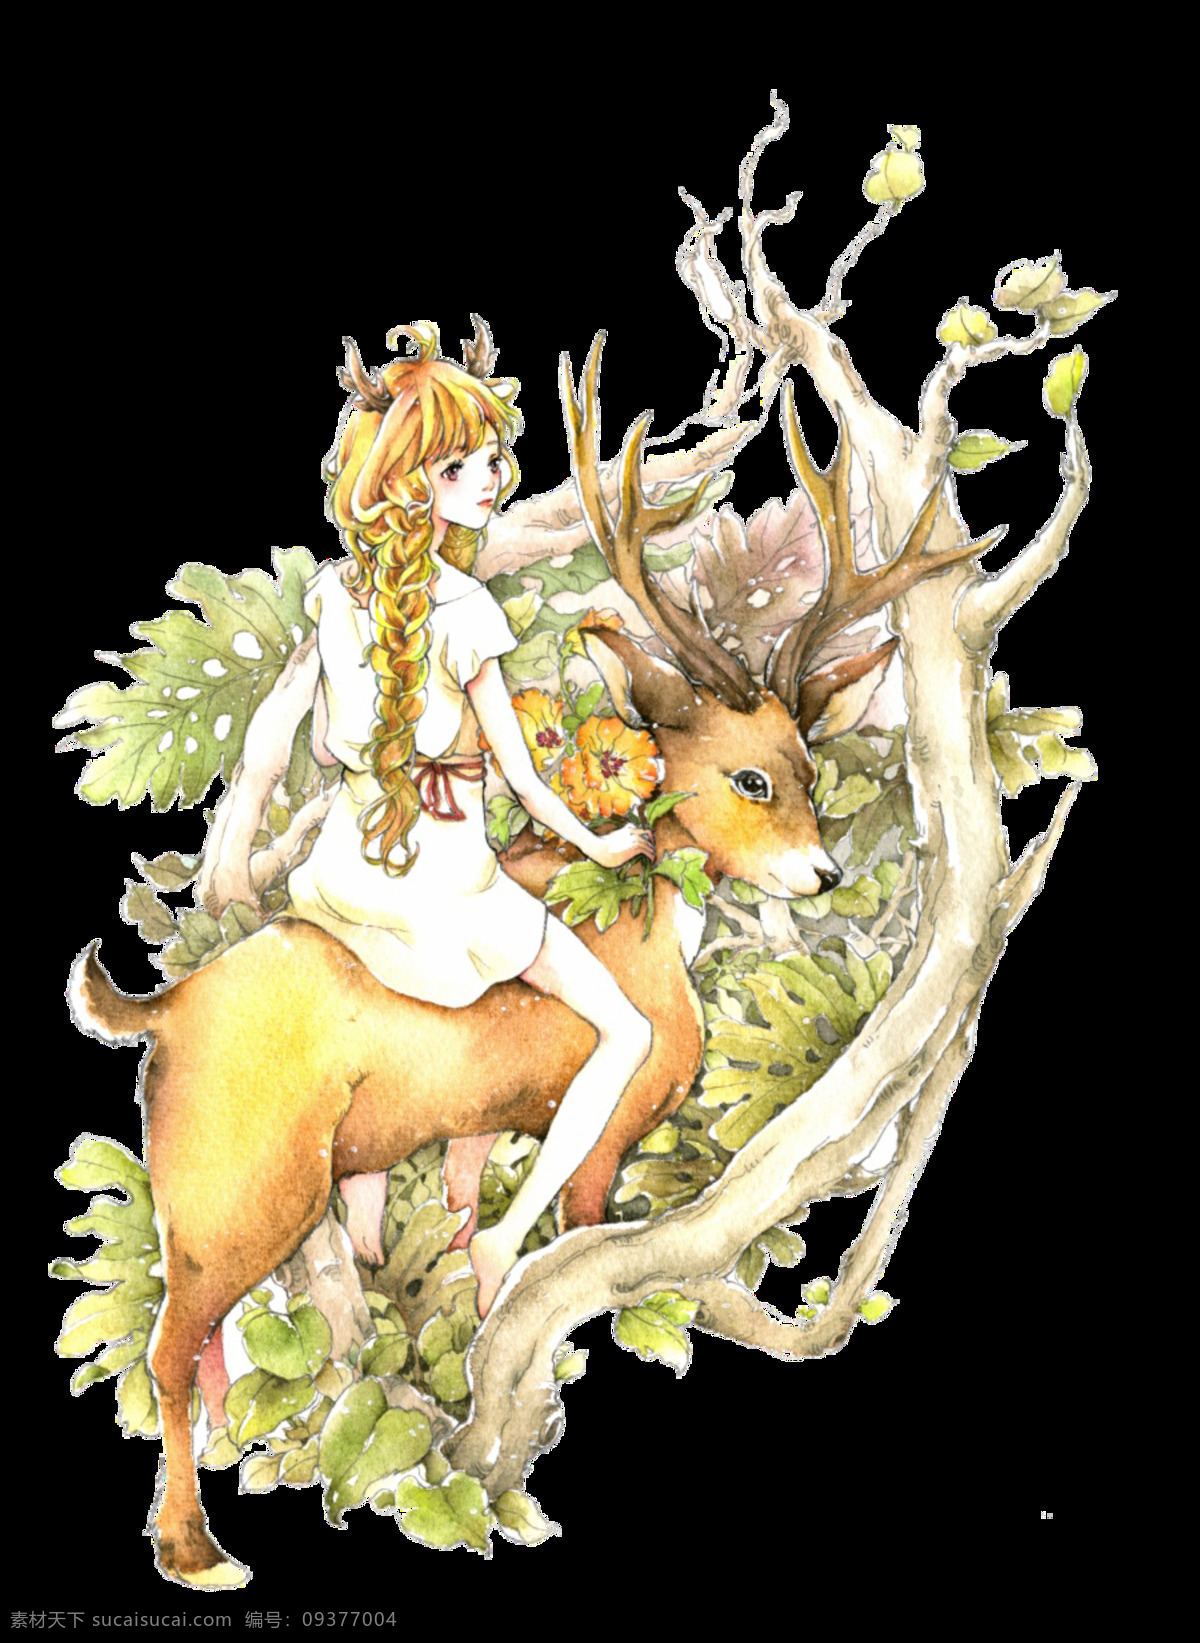 彩绘 童话 美 野兽 图案 元素 彩色装饰 精美装饰 美女与野兽 树林 装饰物 装饰元素